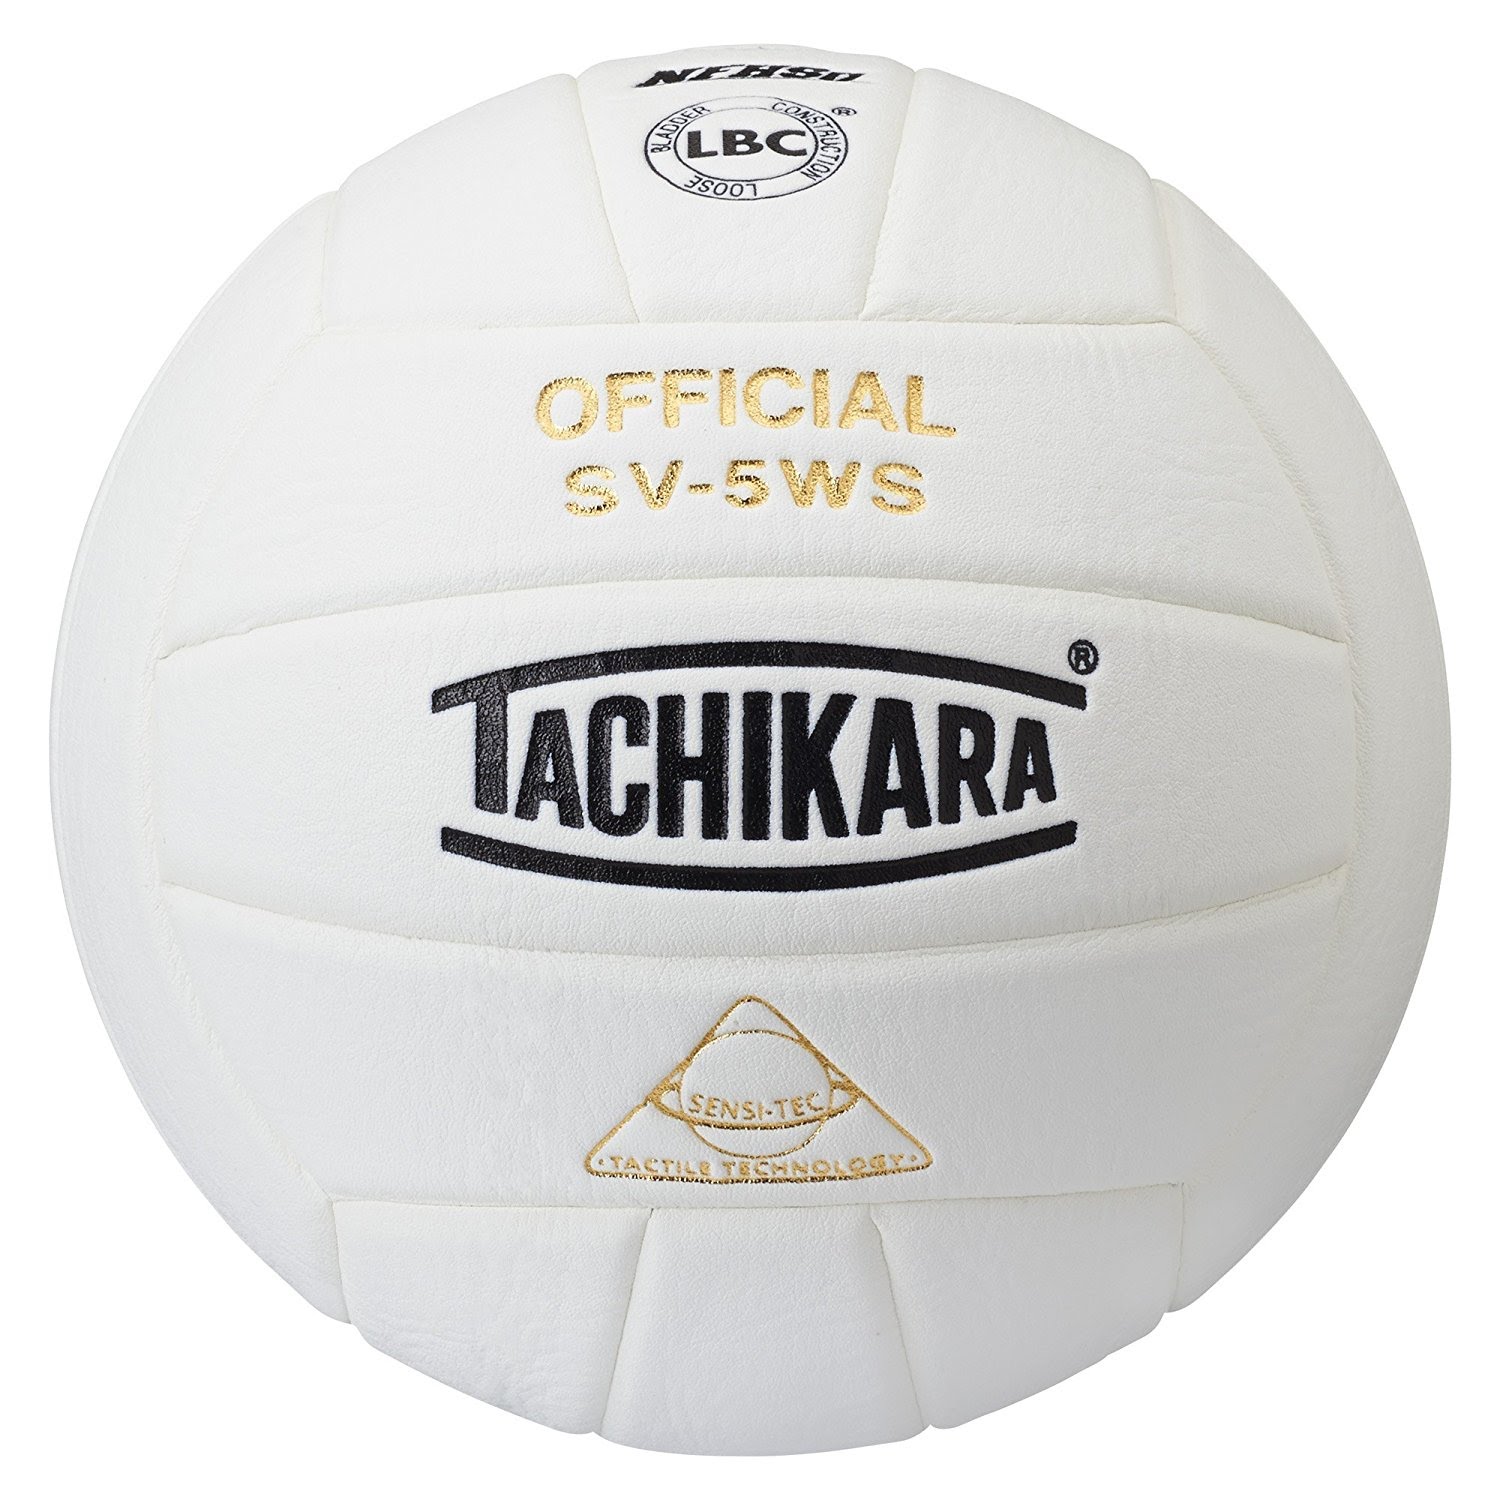 Tachikara SV-5WS Sensi-Tec Volleyball, NFHS, White